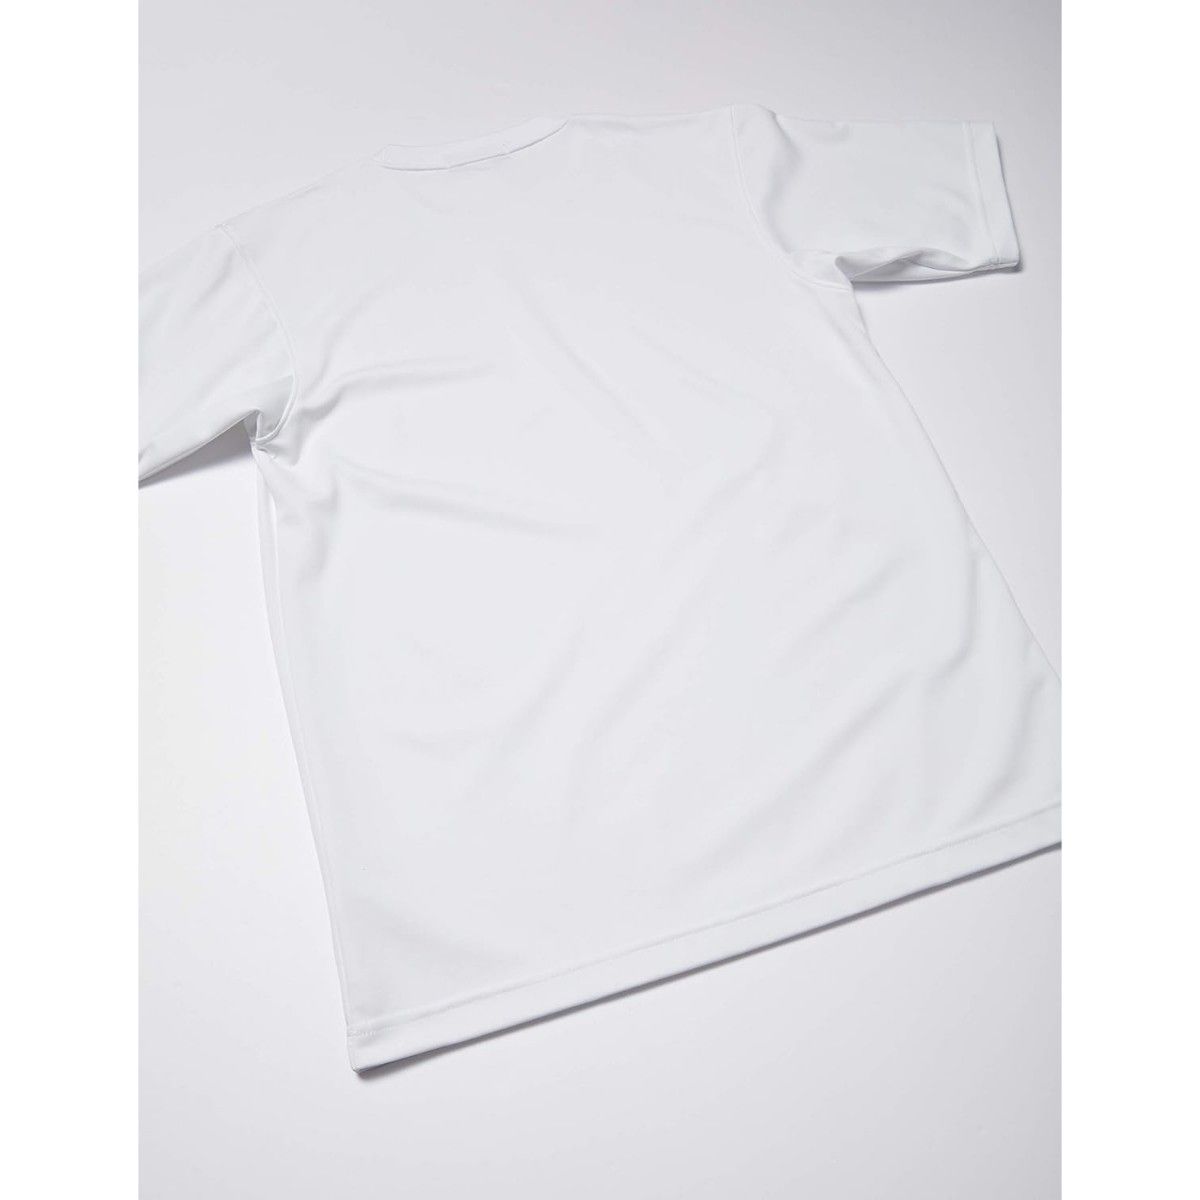 【新品】TOMBOW トンボ 日本製 体操服 丸首 Tシャツ ホワイト